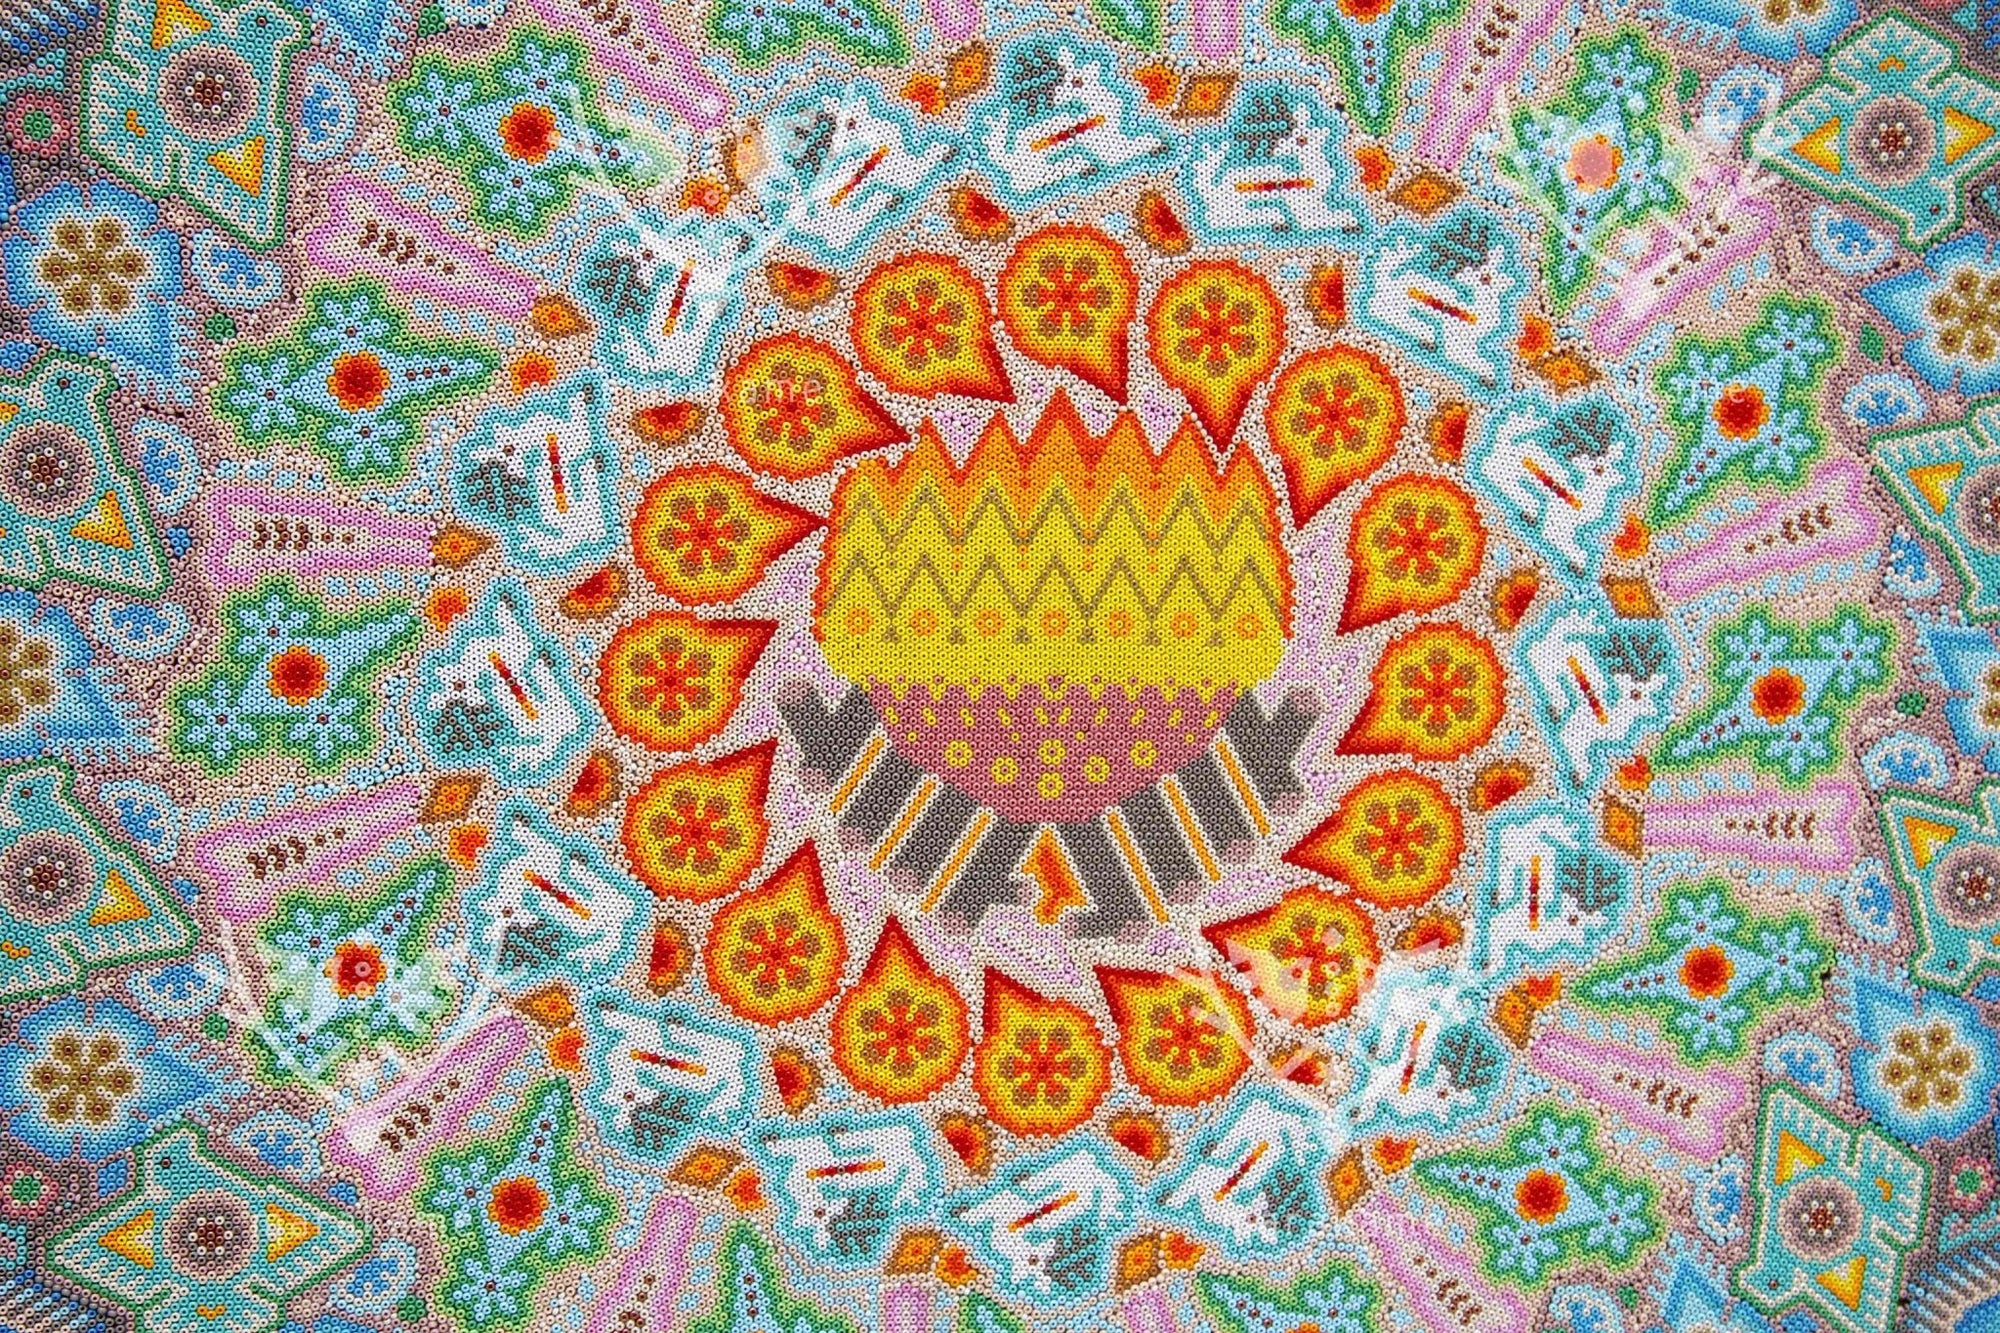 ニエリカ・デ・チャキーラ・ウイチョルの絵画 - 原点 - 2.44 x 1.22 m。 - ウイチョル族の芸術 - マラカメ